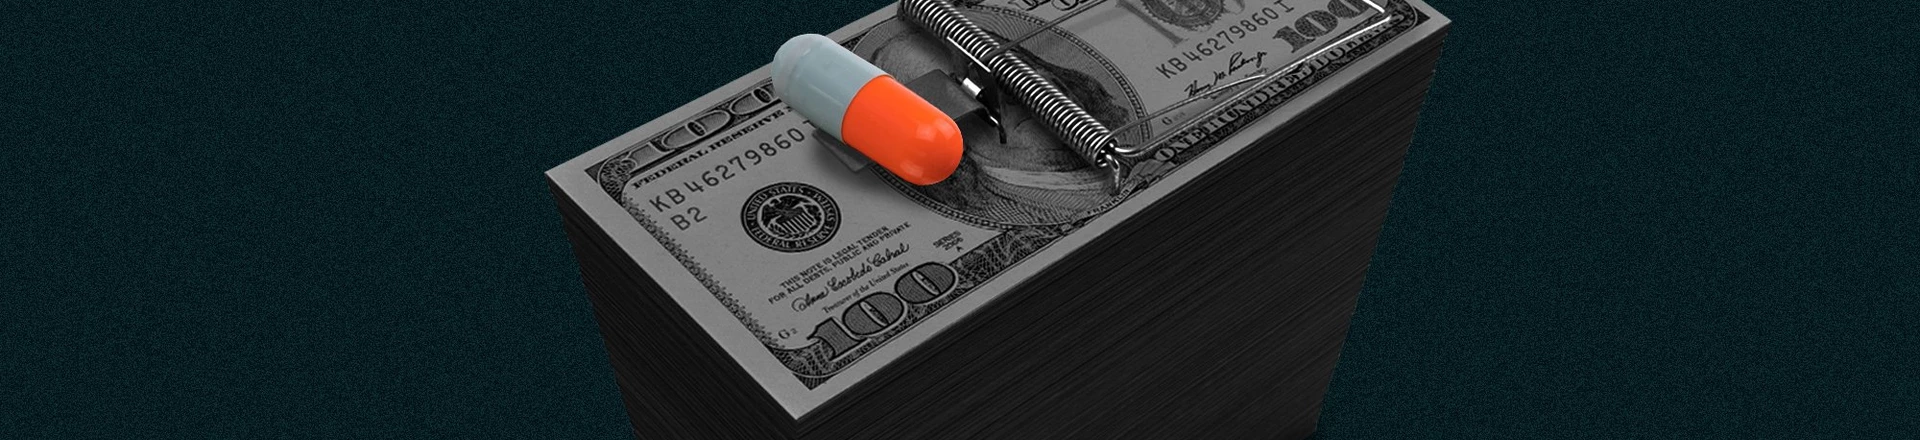 Nos EUA, rede de saúde de direita ganha milhões com kit covid de hidroxicloroquina e ivermectina